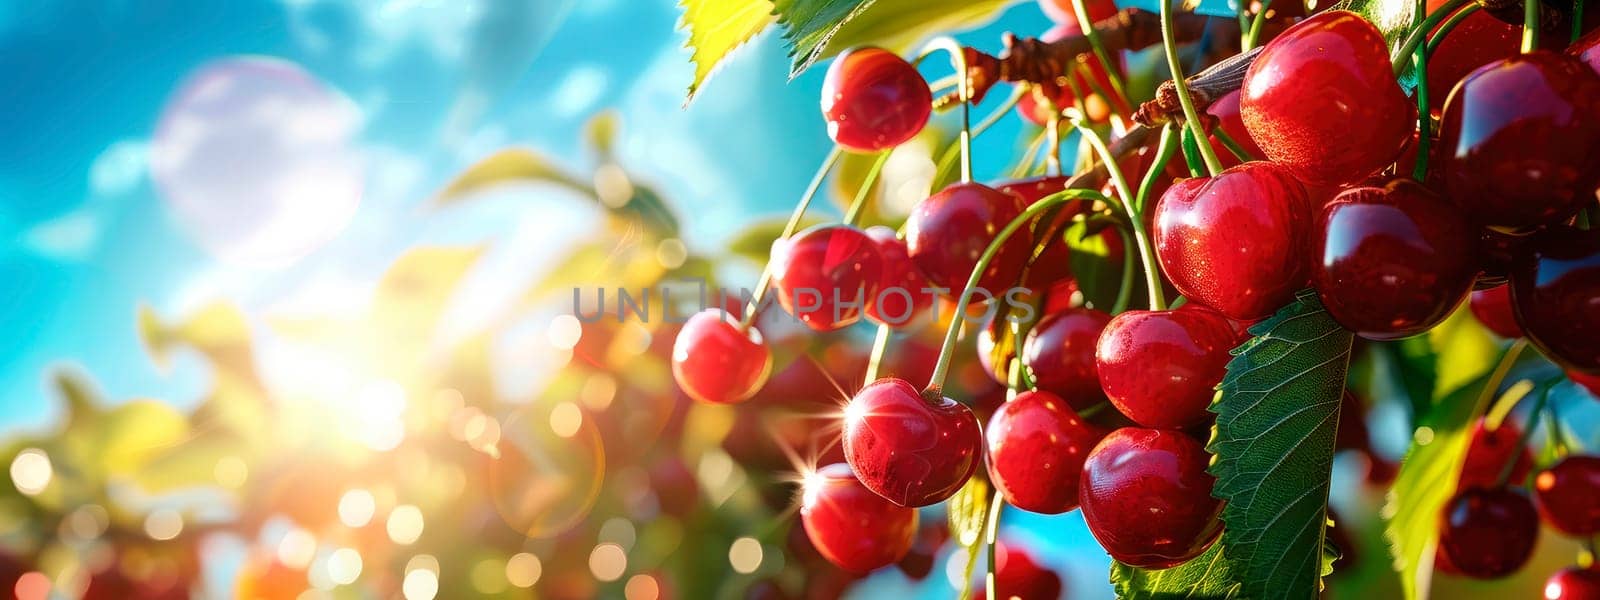 Cherry harvest in the garden. selective focus. food.